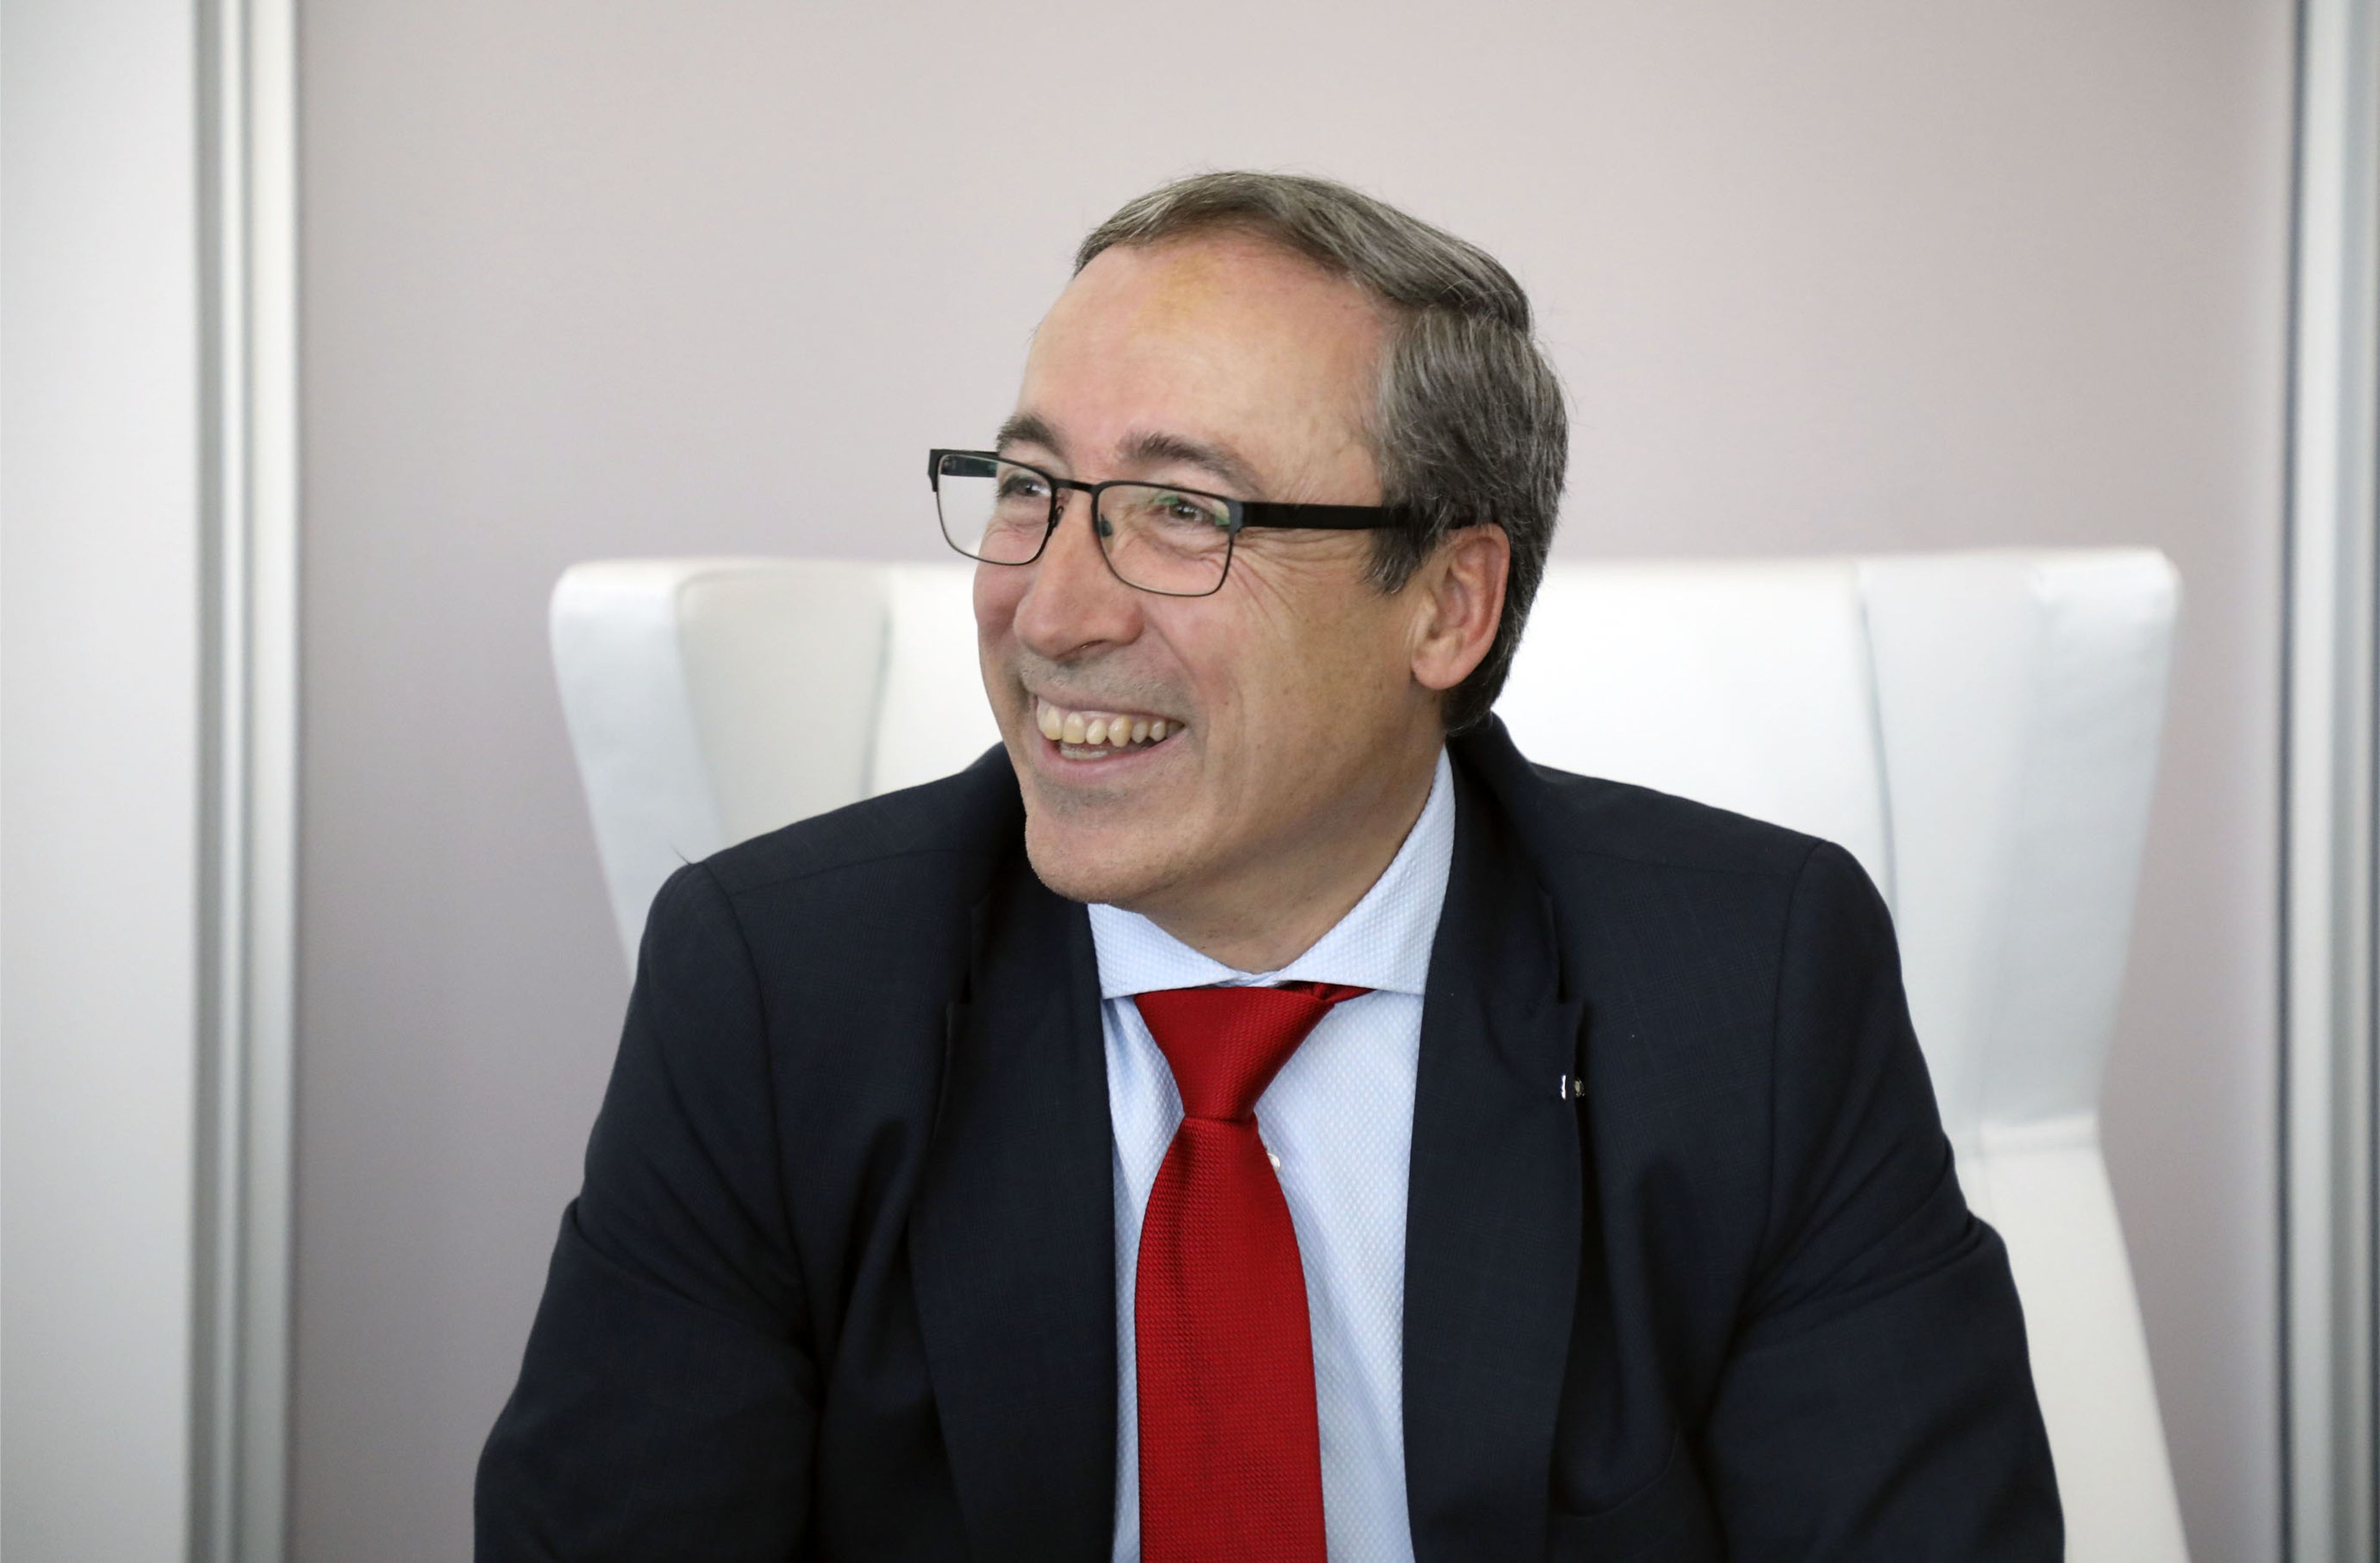 Mikel Palomera, director general de Seat España